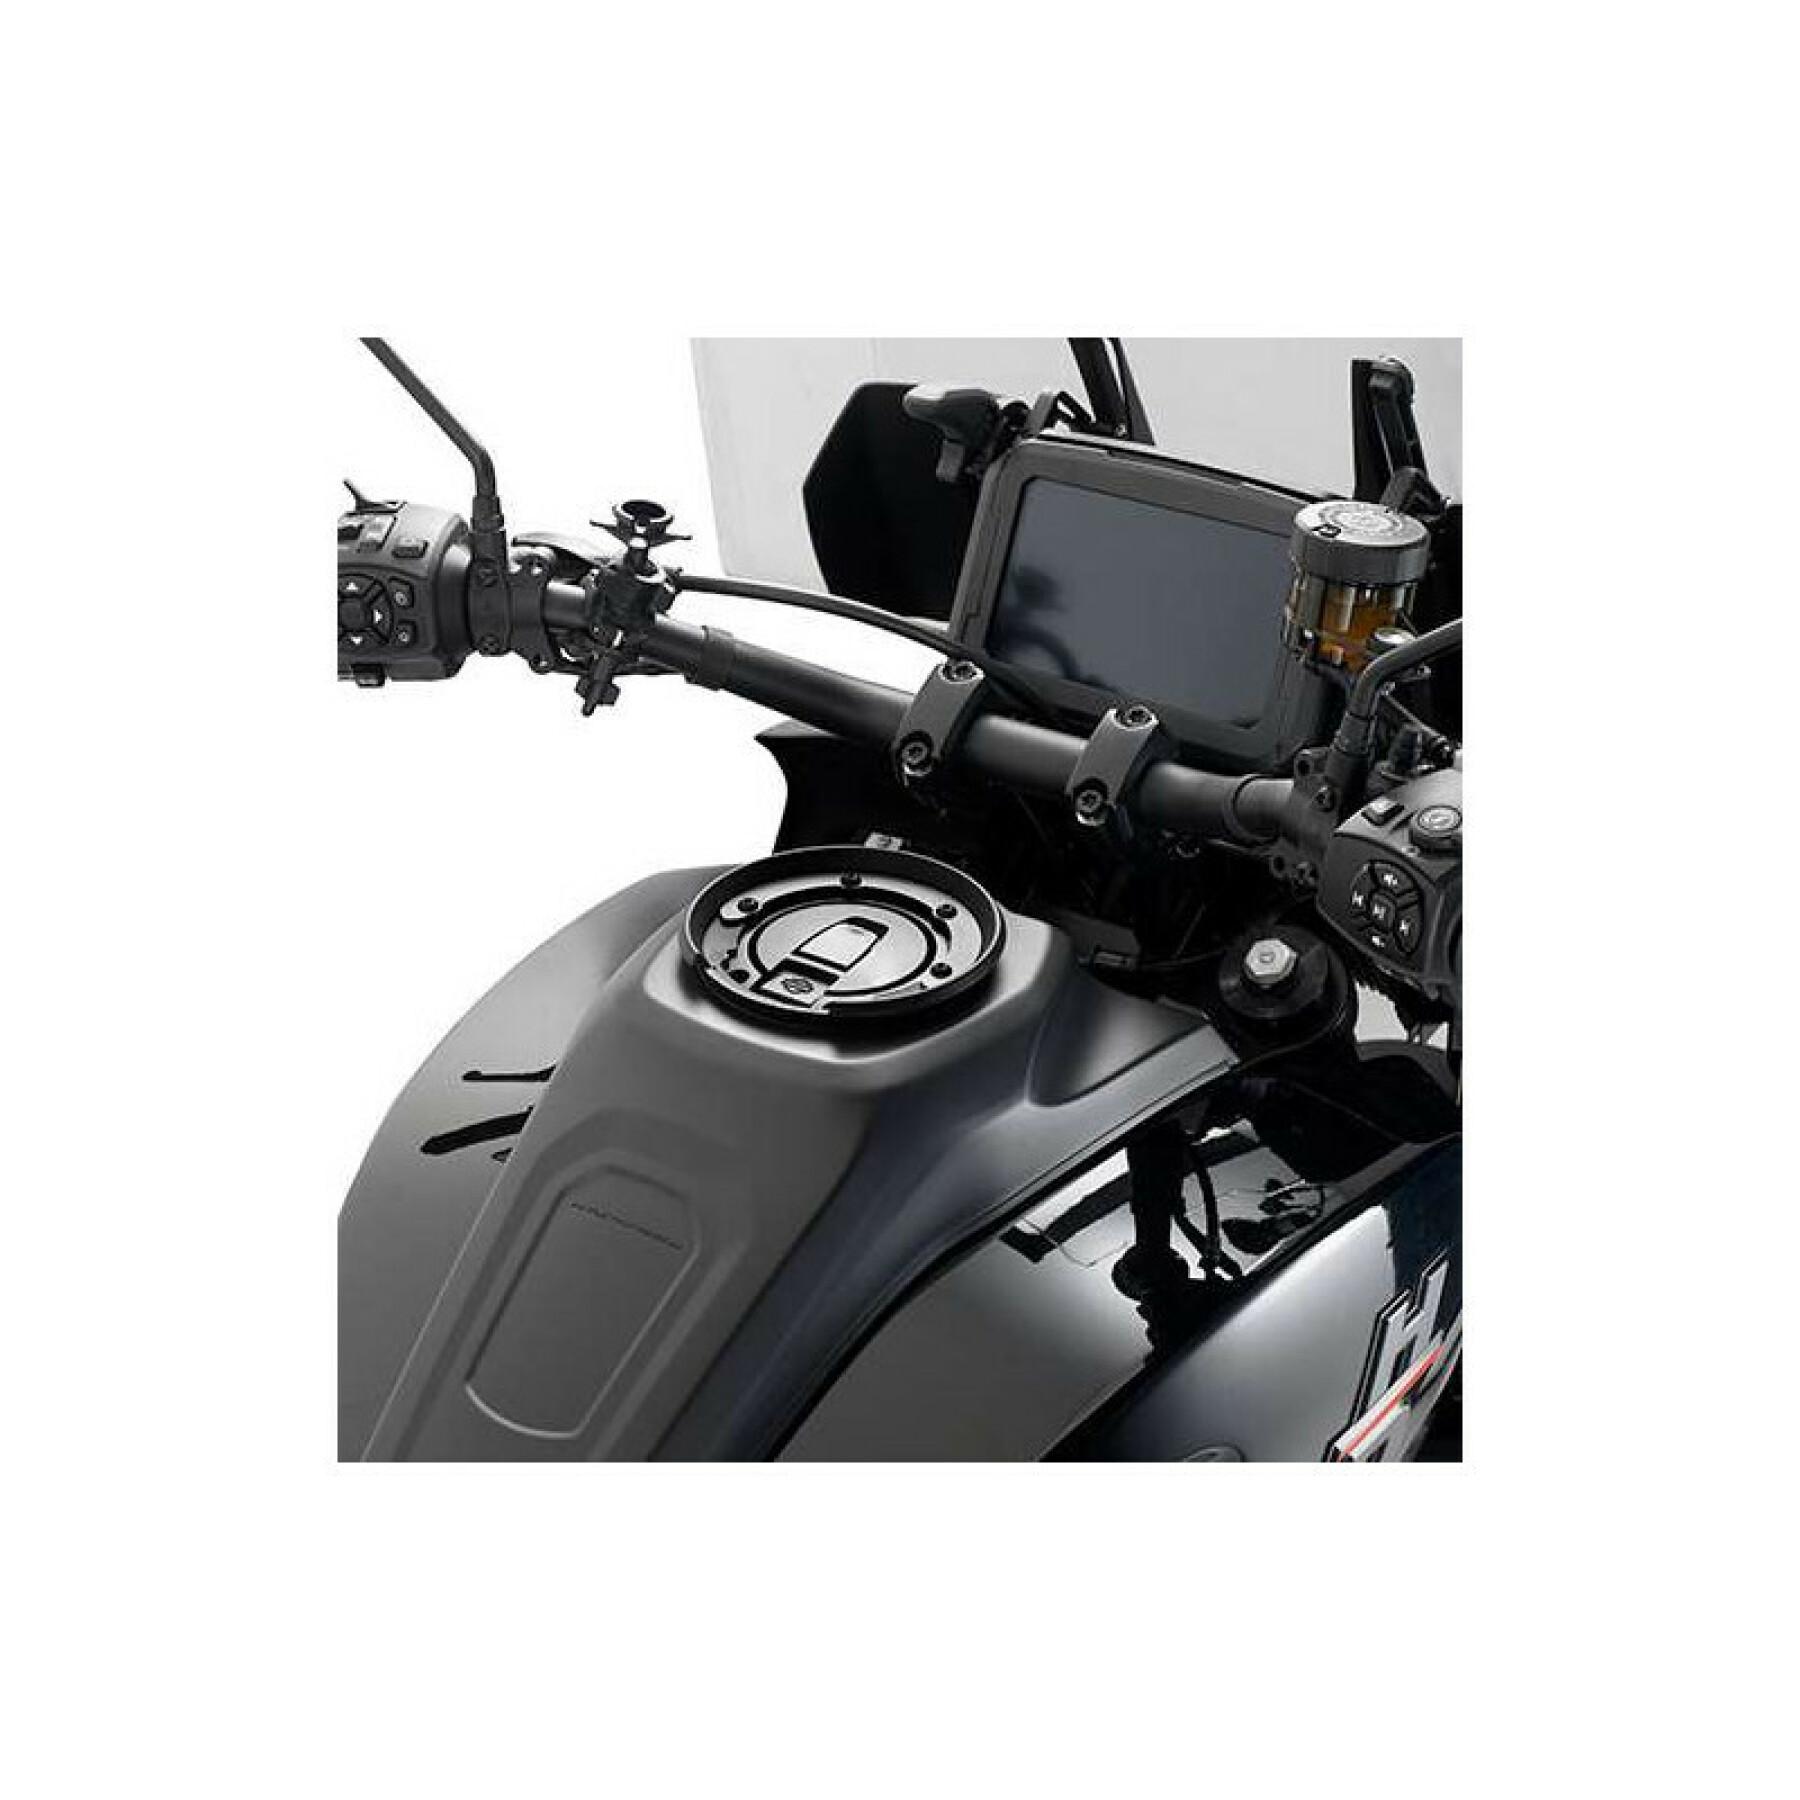 Brida del depósito de la moto Givi Harley Davidson Pan America 1250